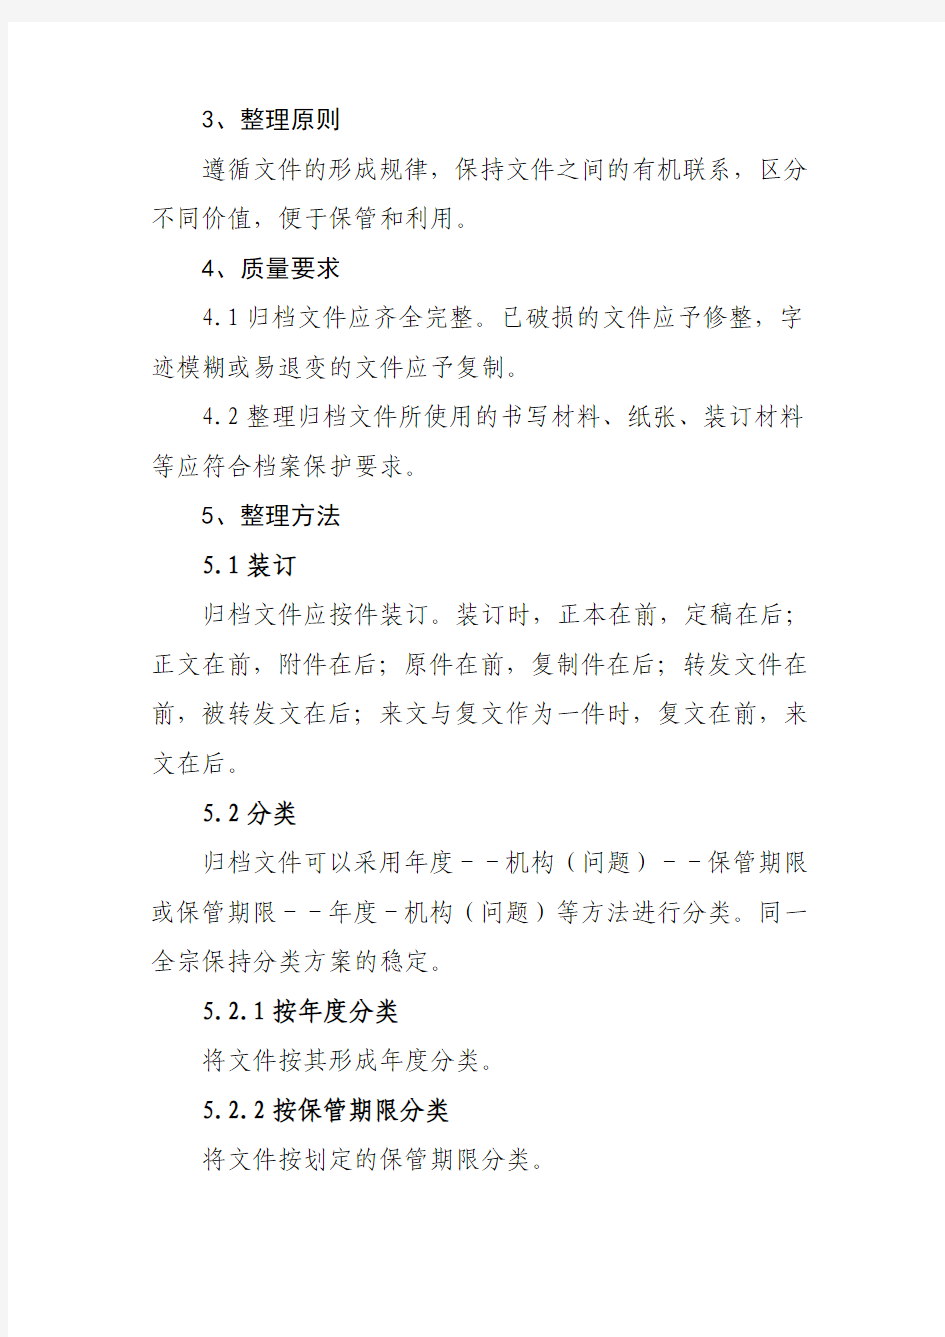 4 中华人民共和国档案行业标准归档文件整理规则